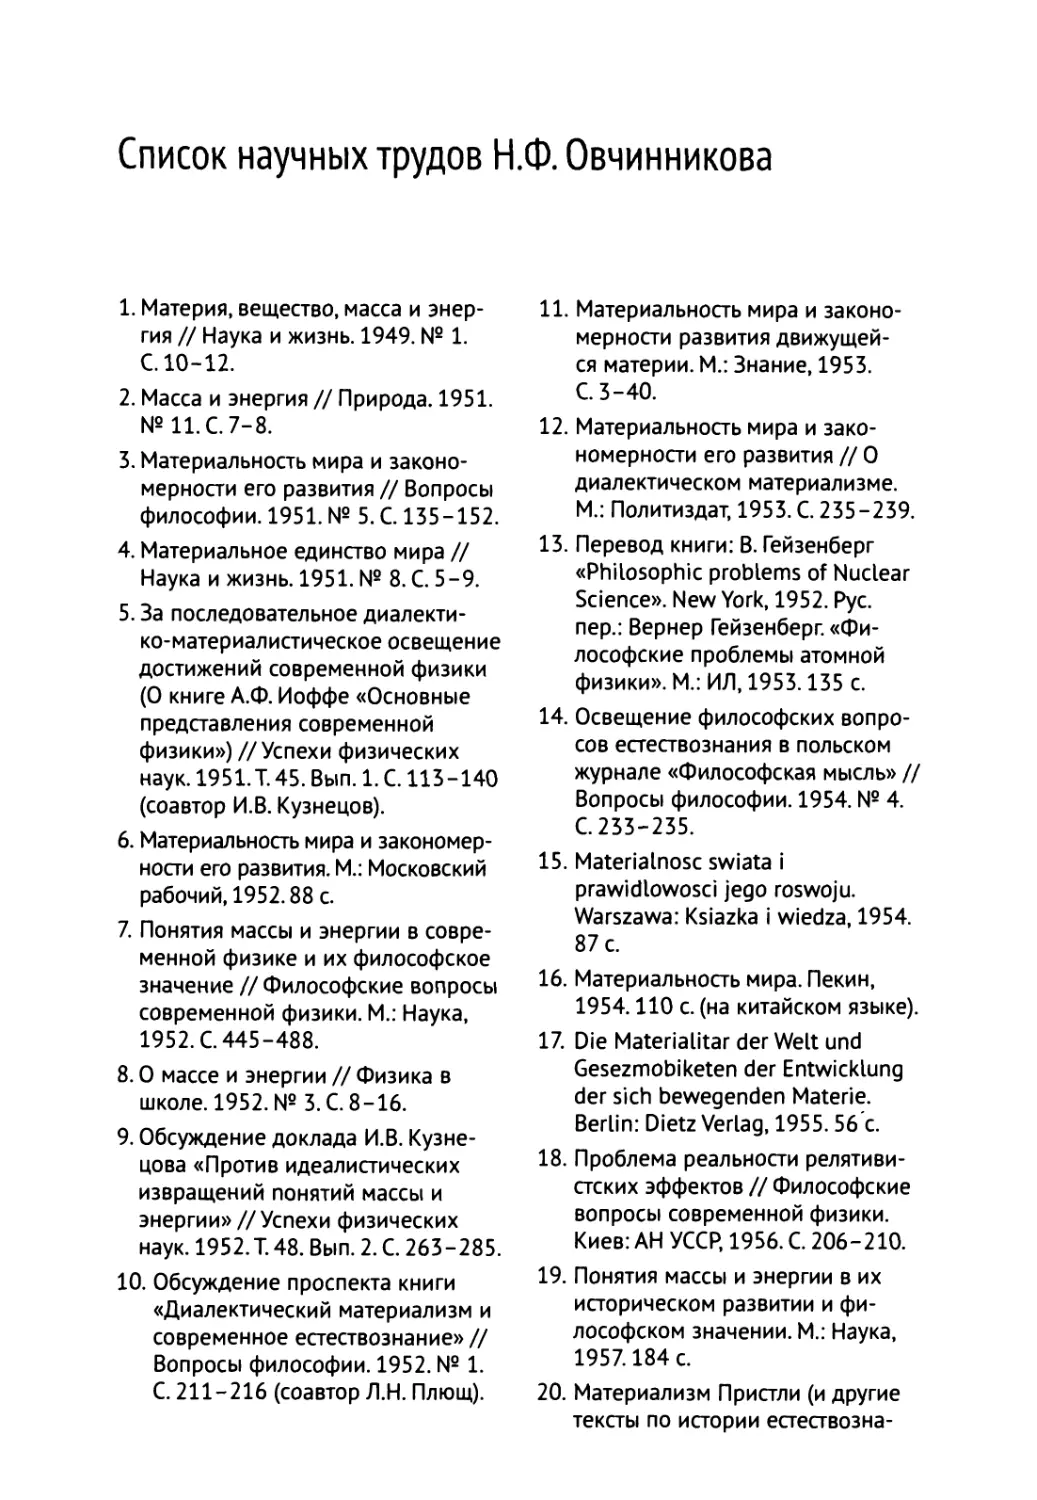 Список научных трудов Н.Ф. Овчинникова